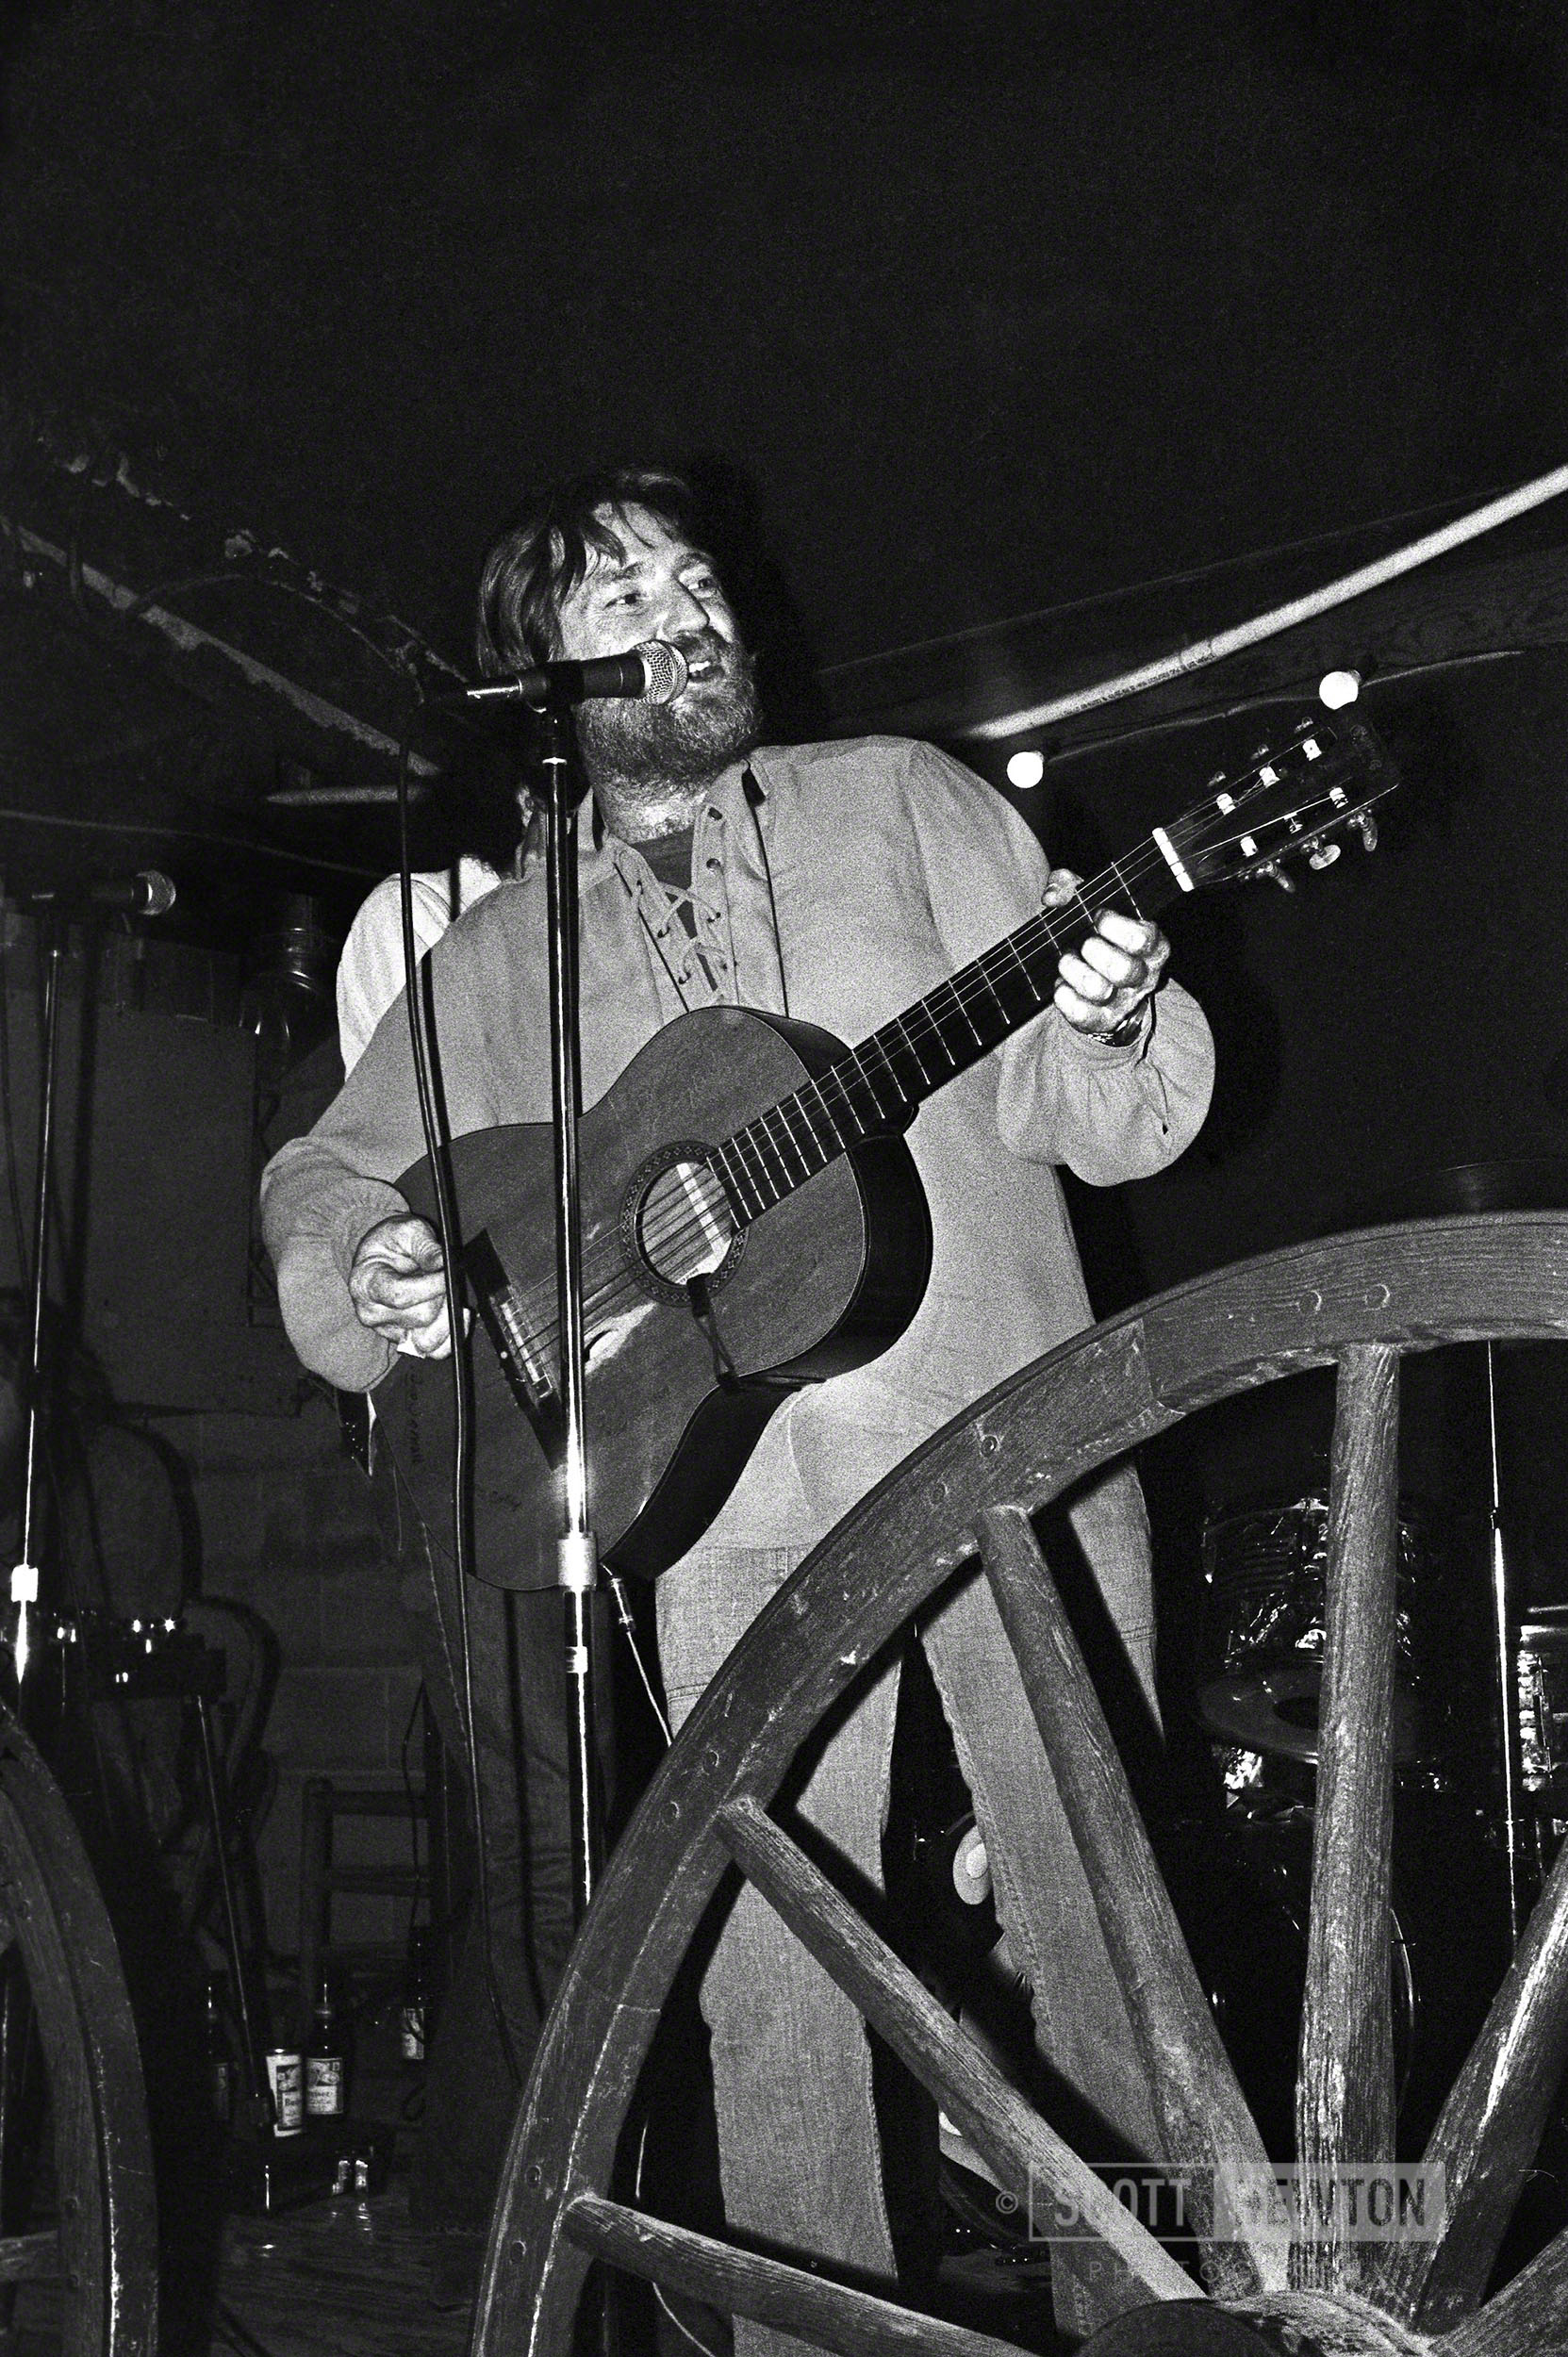 Willie @ Big G's in Round Rock, Texas 1973